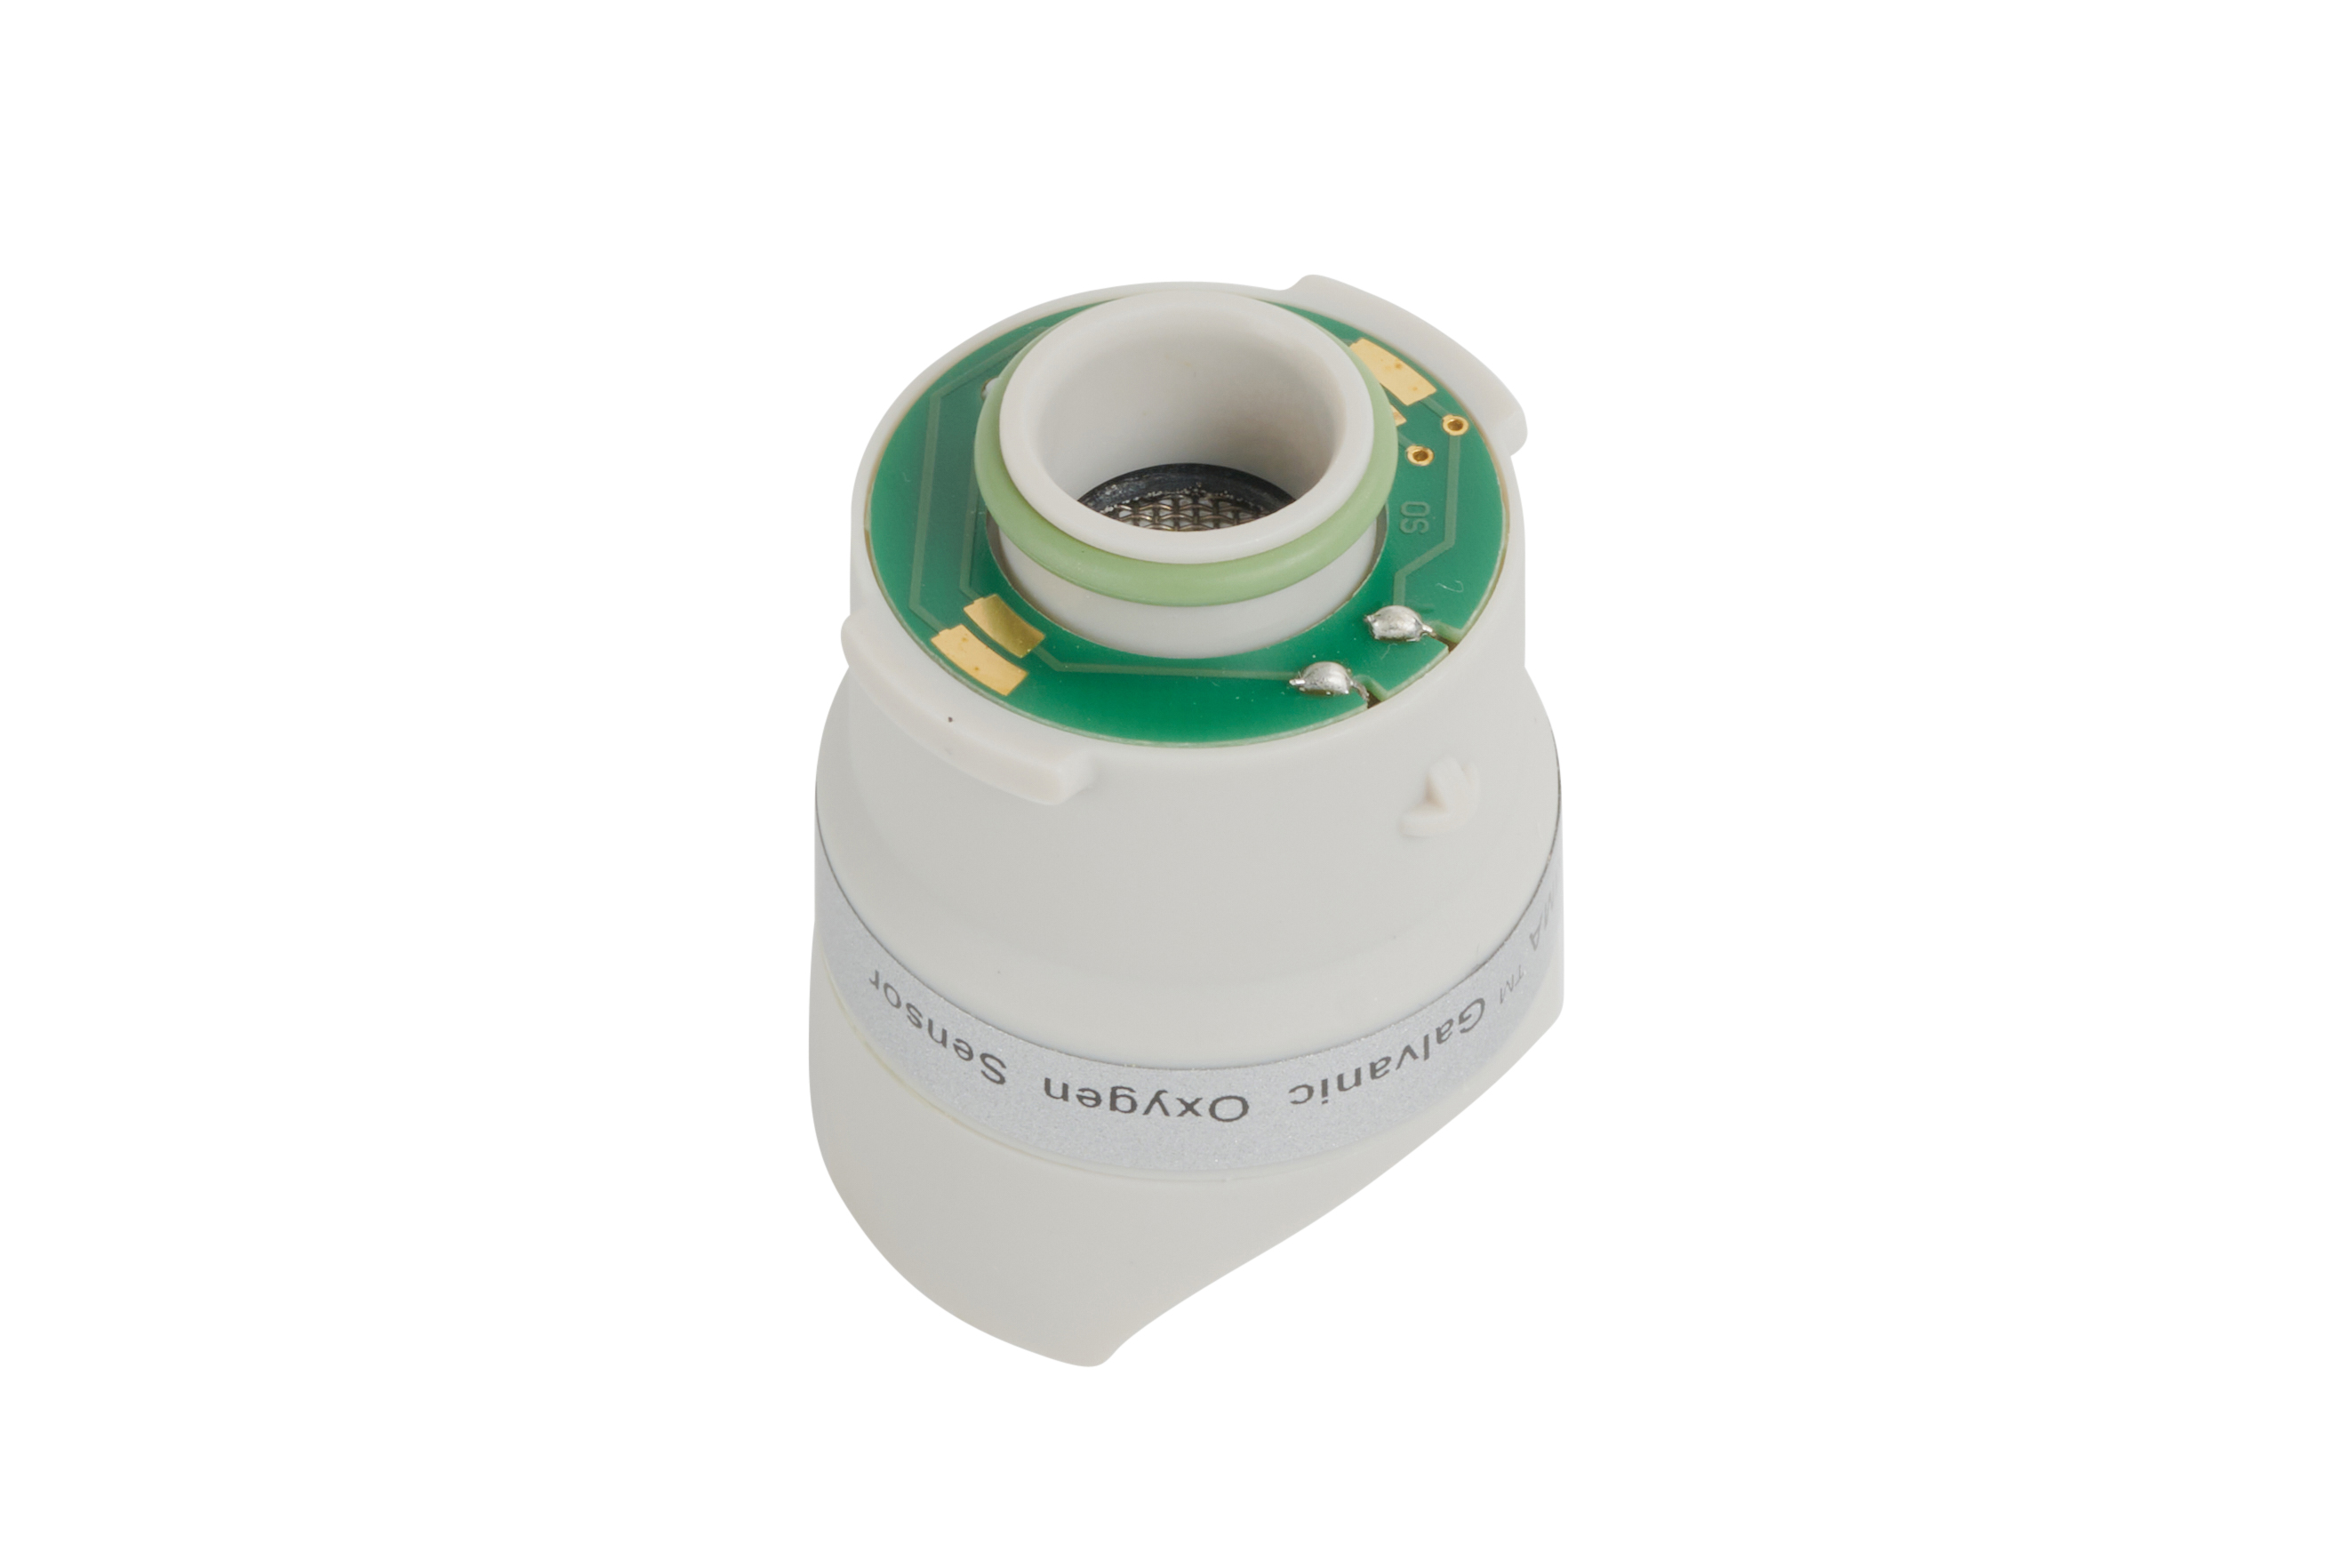 Oxygen Sensor for Skanray CO2 module
